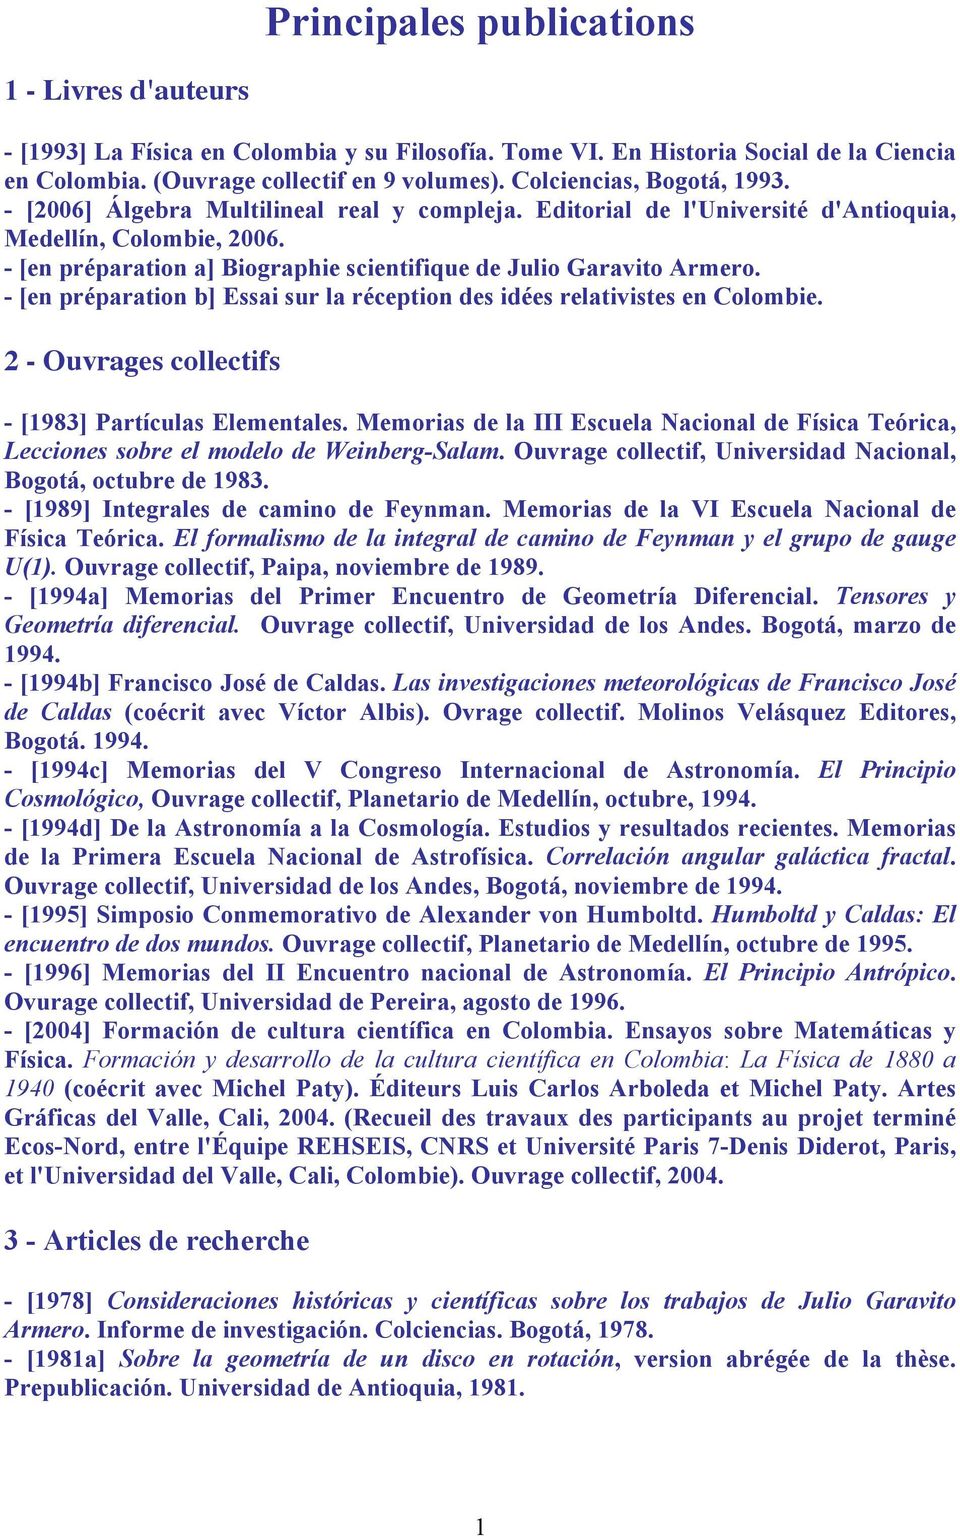 - [en préparation a] Biographie scientifique de Julio Garavito Armero. - [en préparation b] Essai sur la réception des idées relativistes en Colombie.